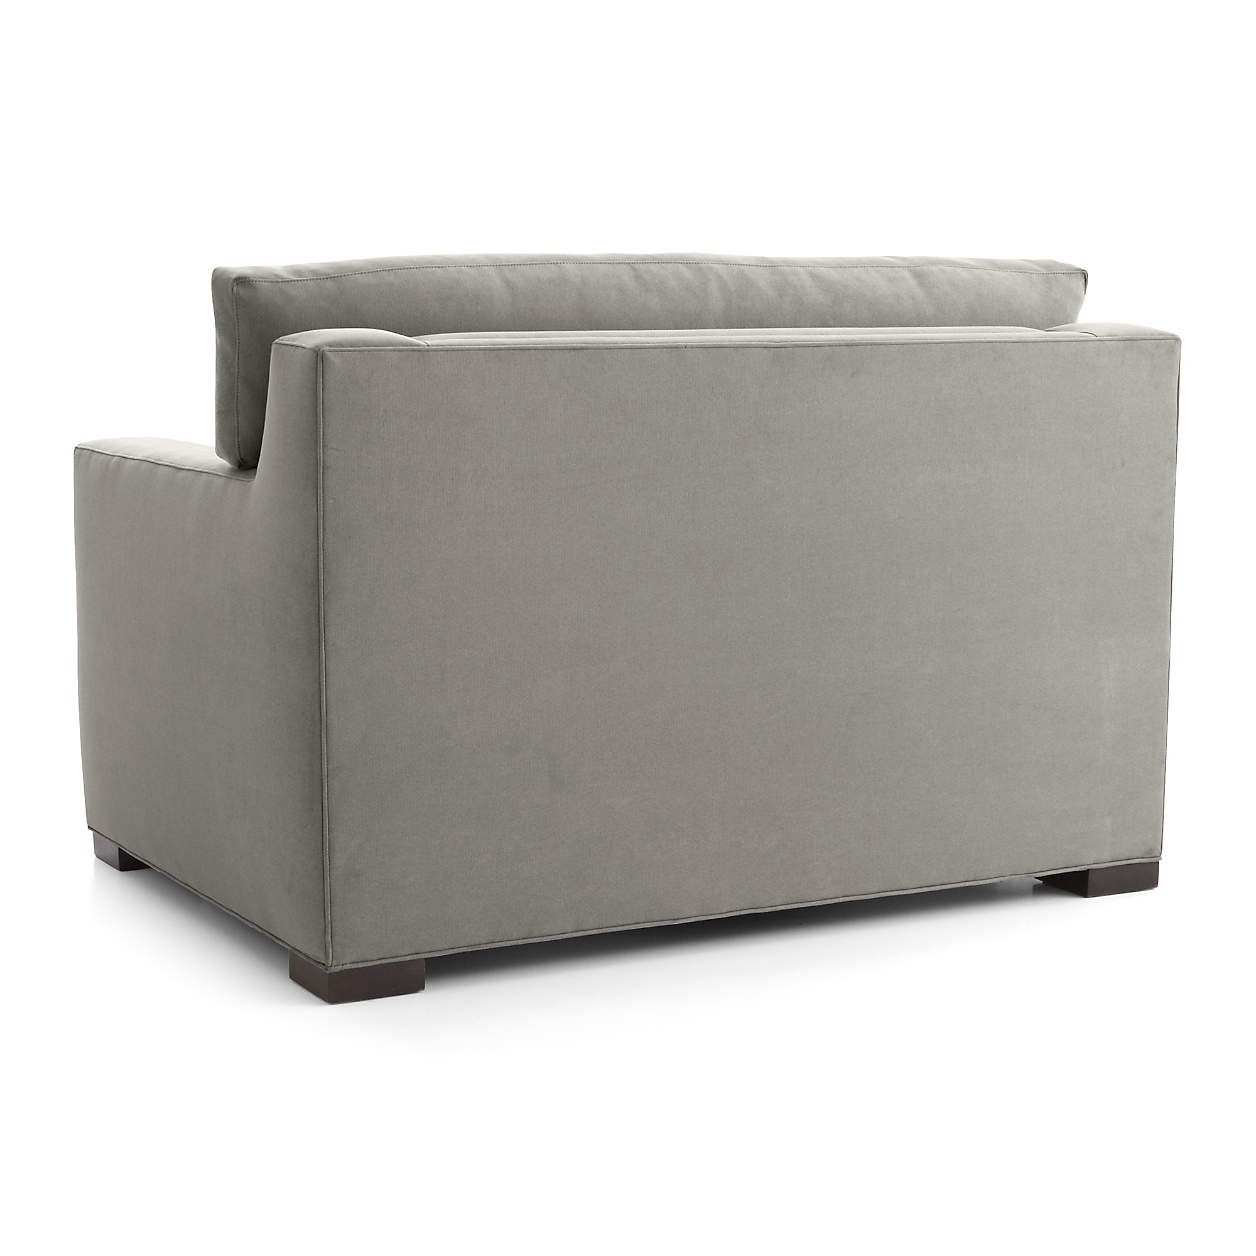 Axis Twin Sleeper Sofa - Image 4